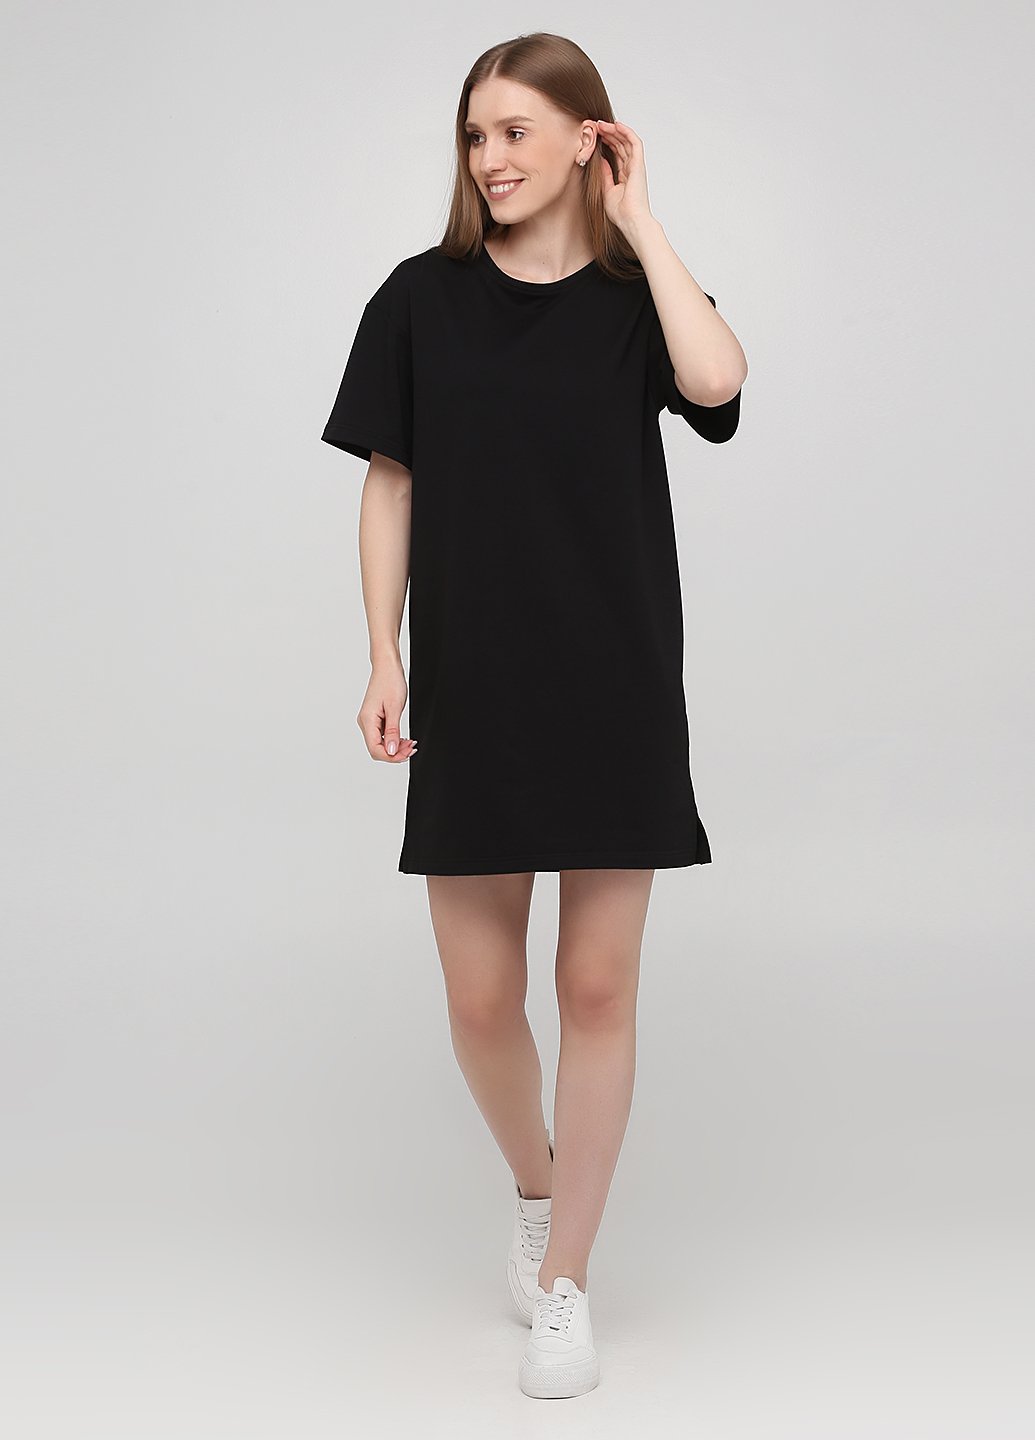 Купить Оверсайз платье Merlini Нанси 700000009 - Черный, 42-44 в интернет-магазине